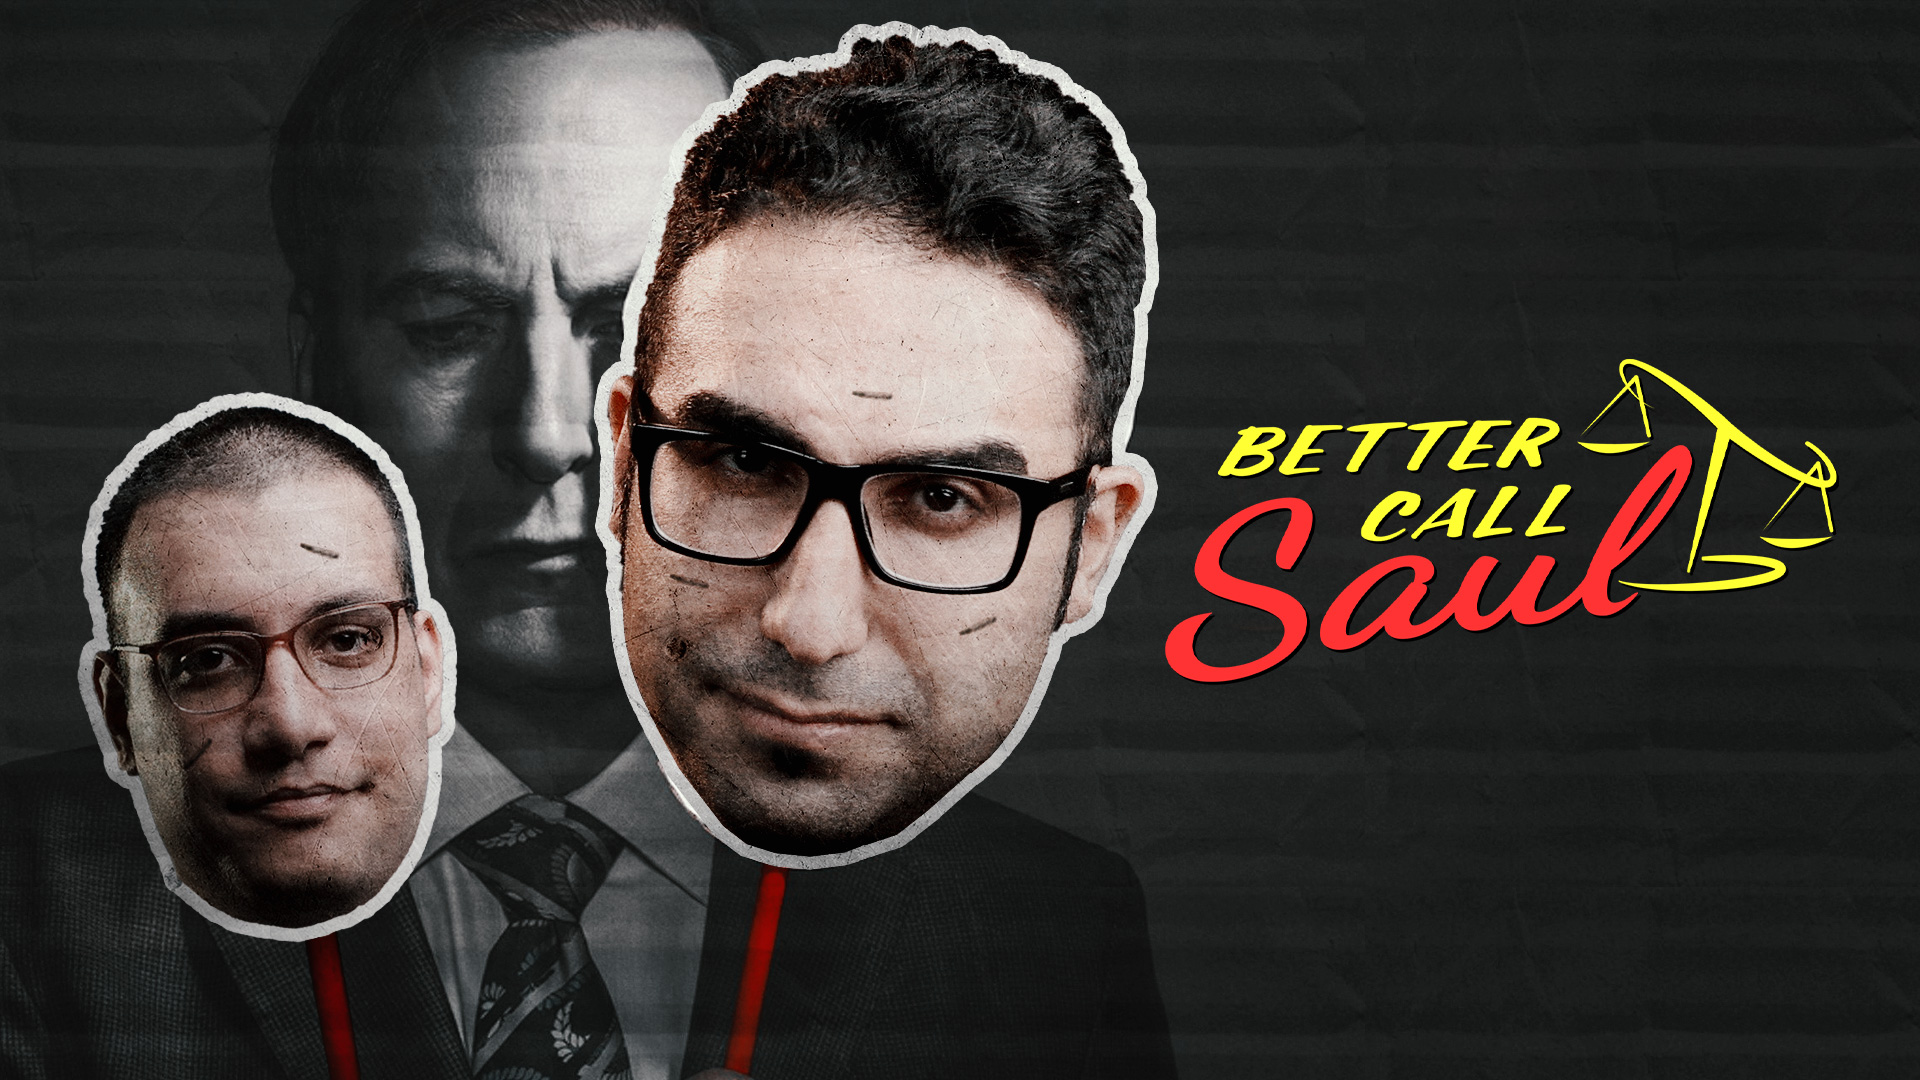 زوم کست: بررسی سریال Better Call Saul | قسمت ۱ تا ۷ از فصل ششم